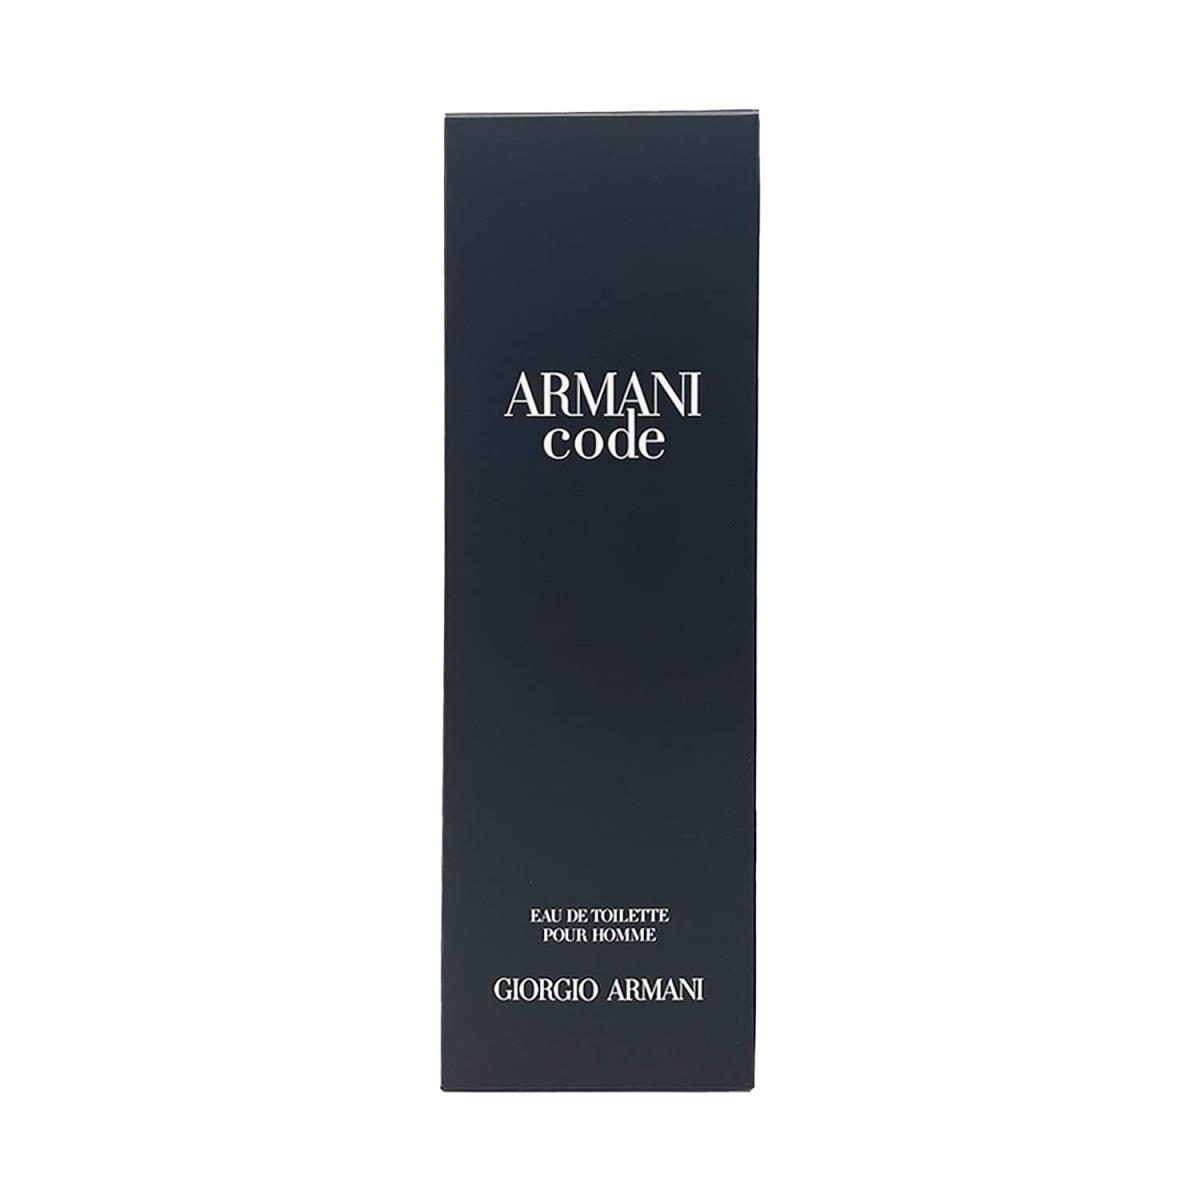 Armani Code by Giorgio Armani Eau De Toilette Spray 4.2 oz / 125 ml Men